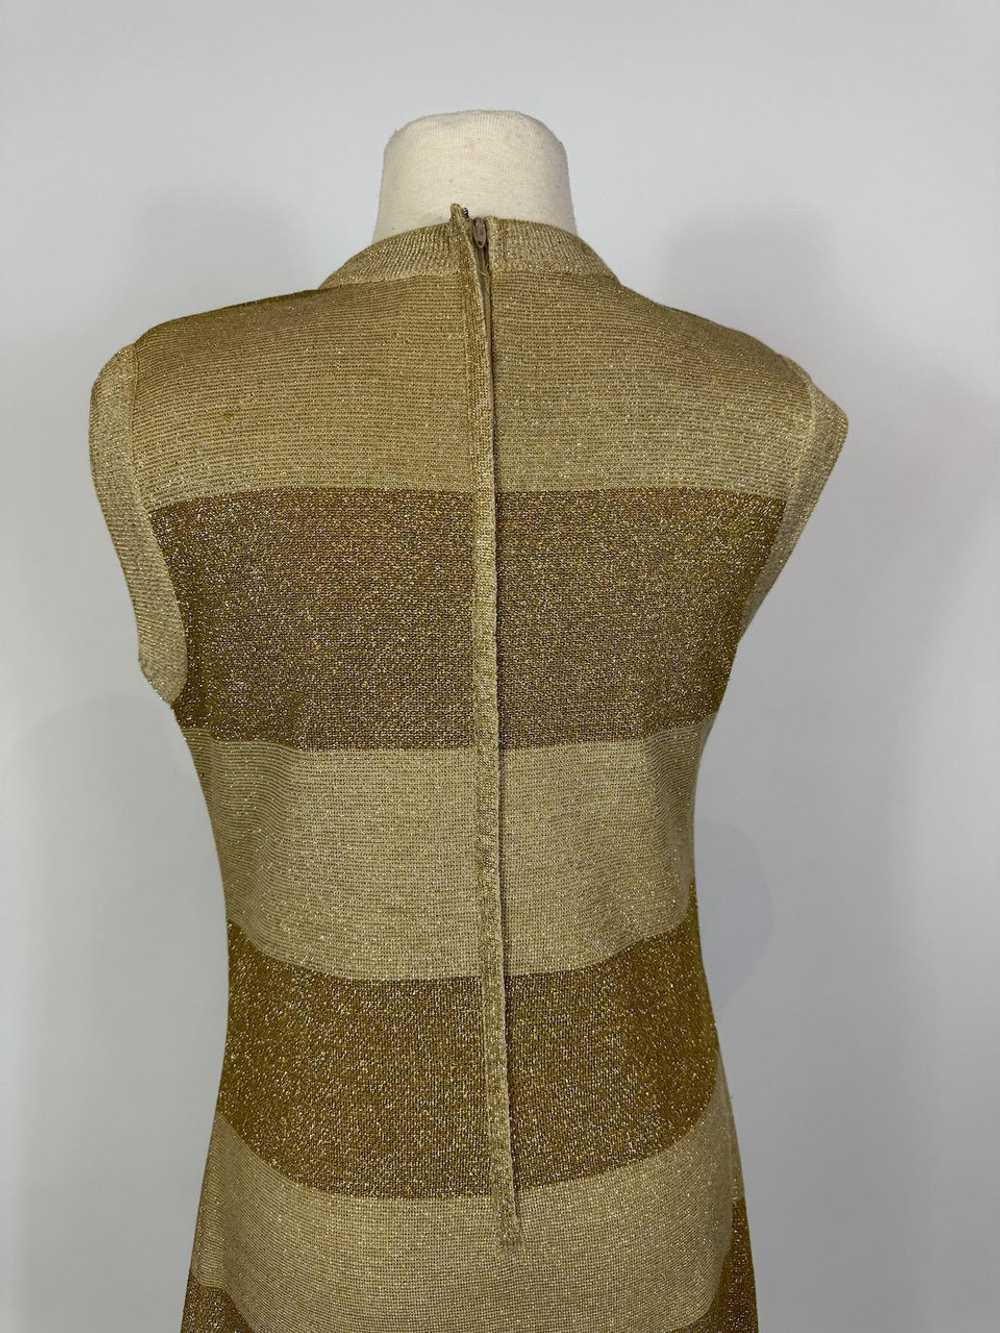 1960s Mod Gold Wool Metallic Knit Shift Dress - image 5